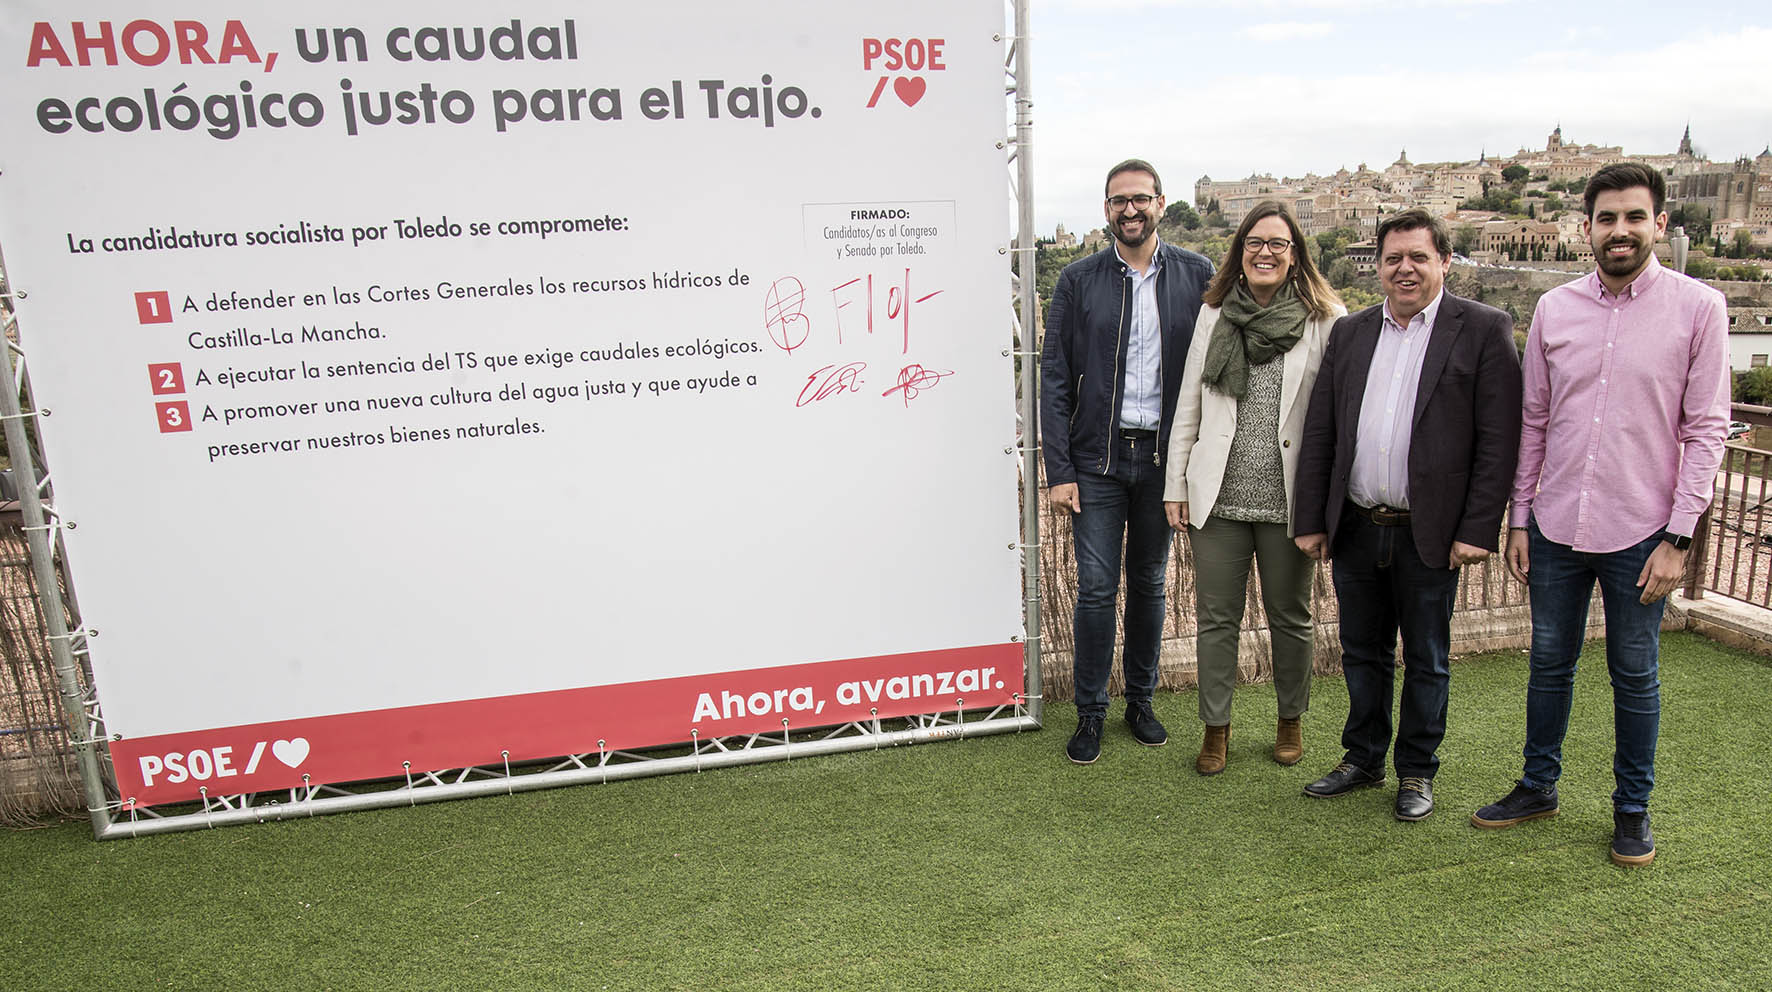 El PSOE asegura que defenderá los intereses del Tajo en el Congreso.